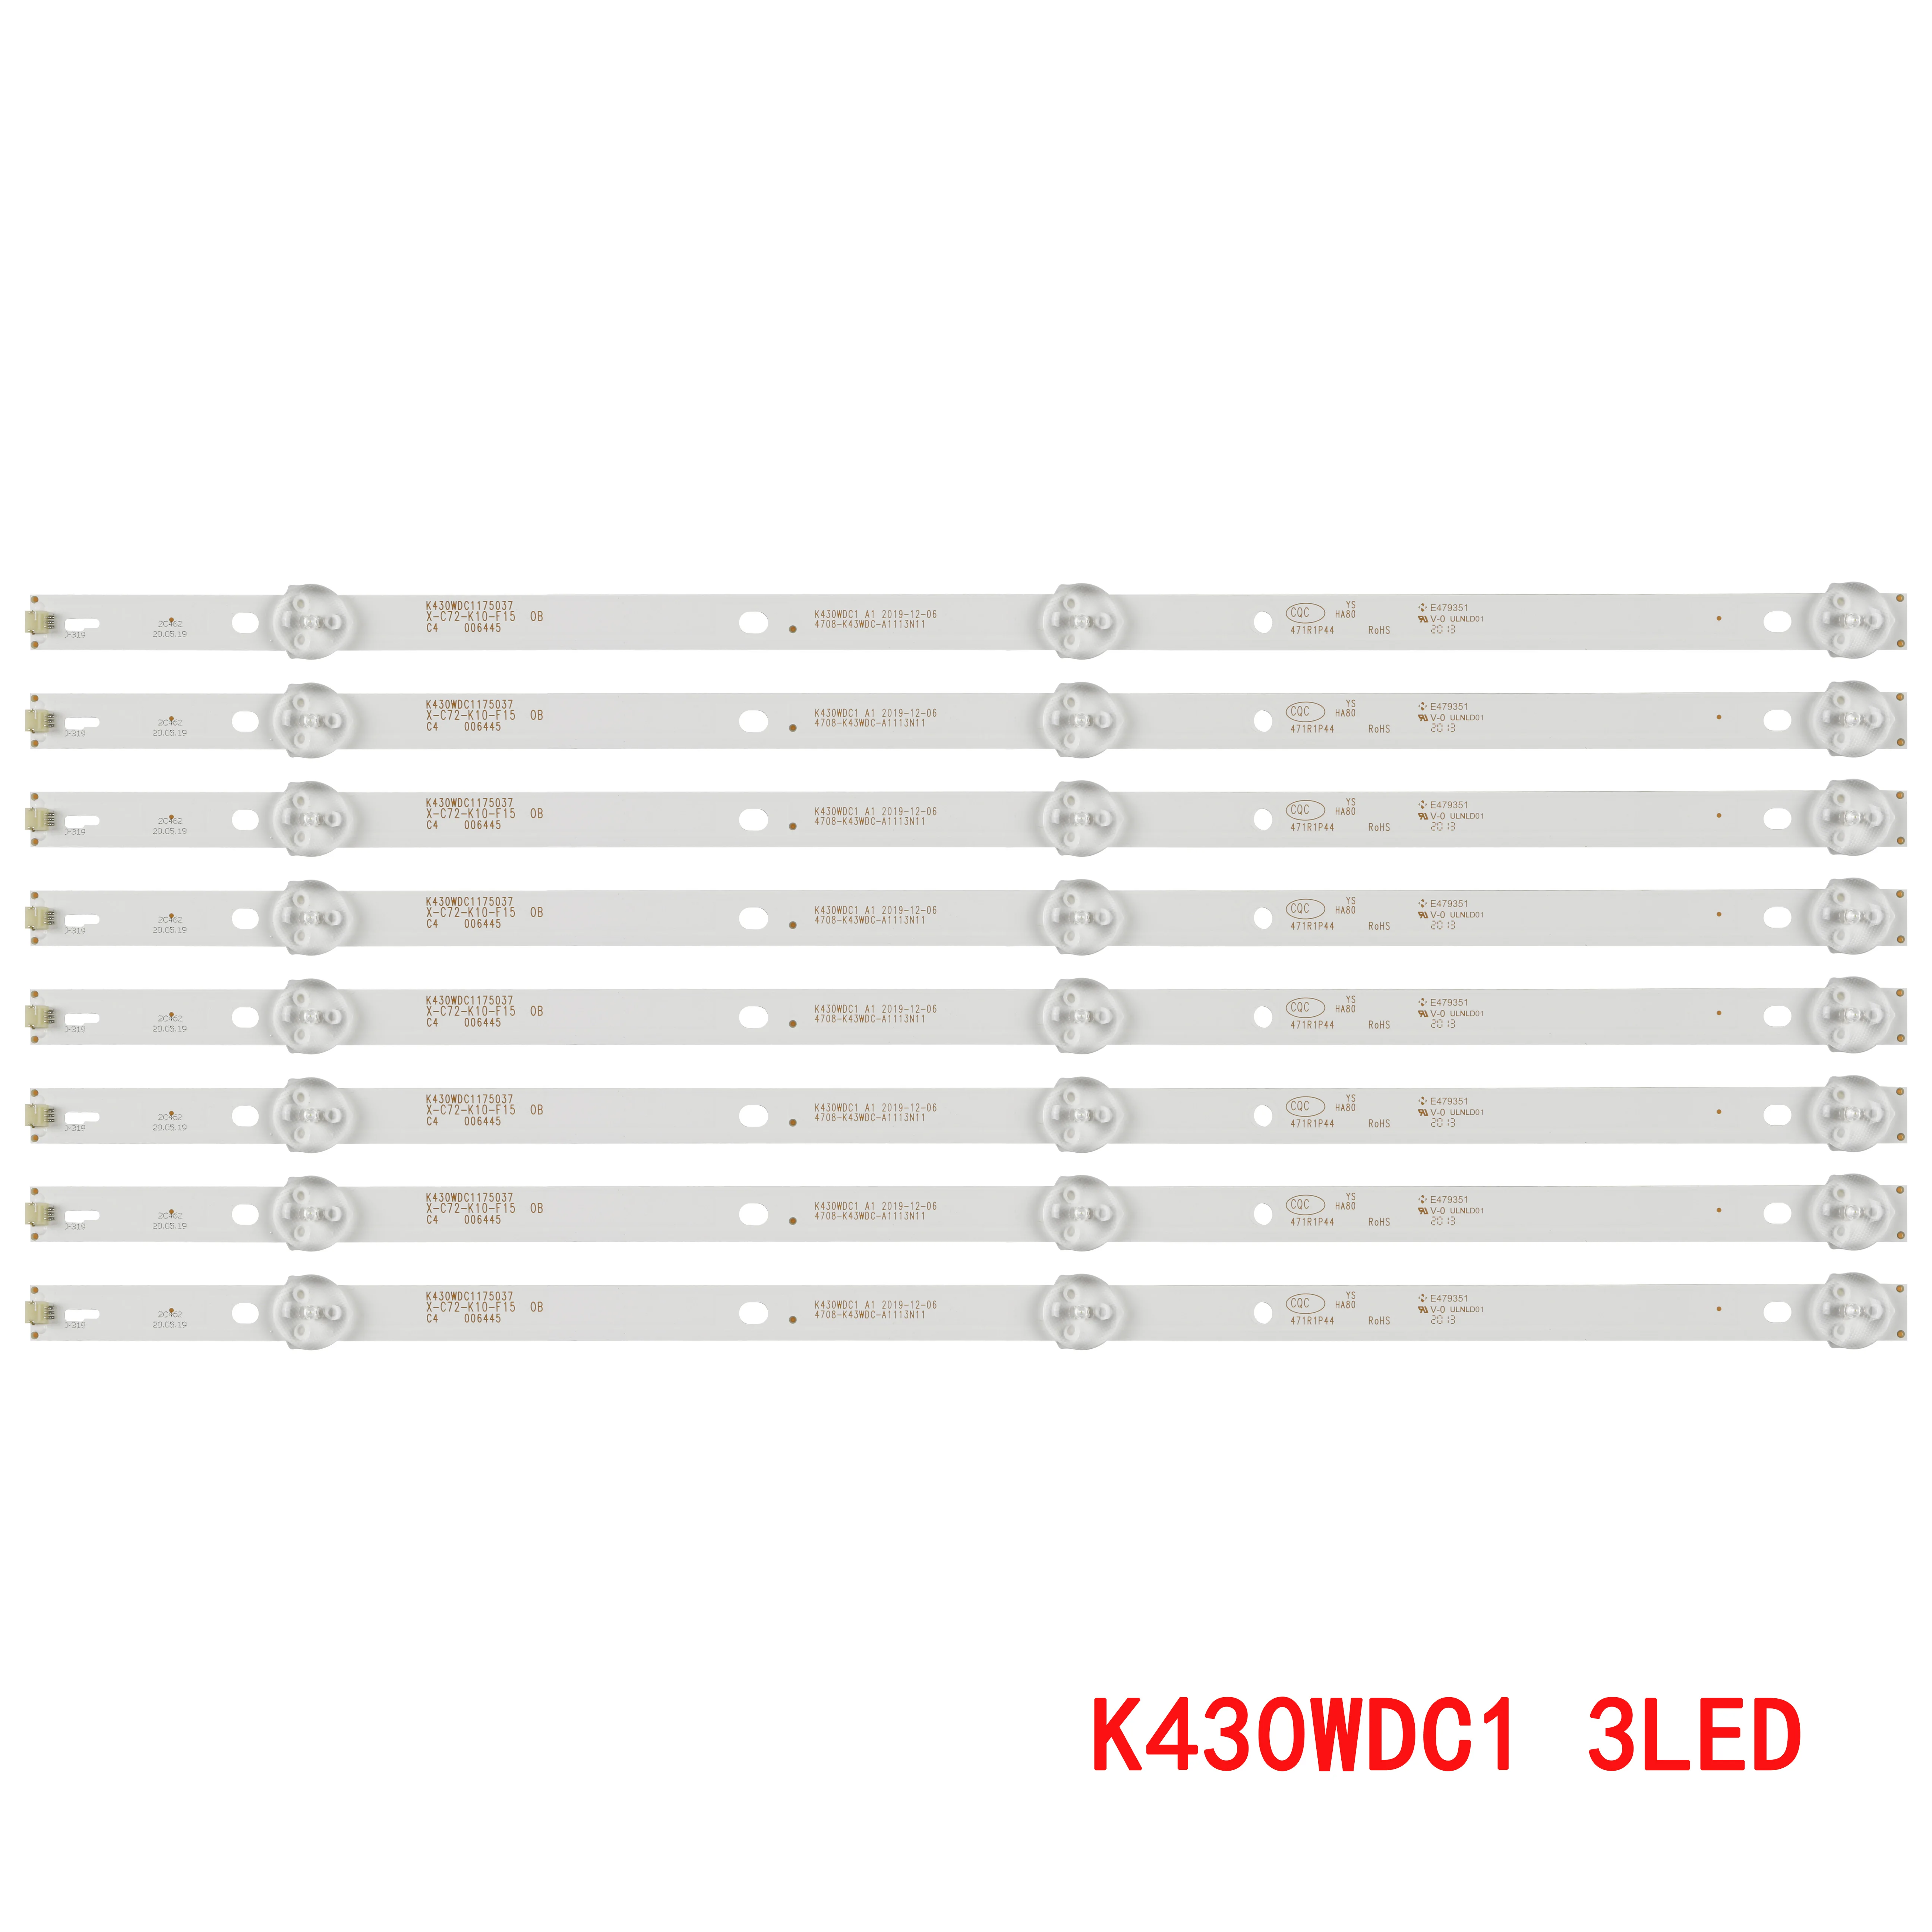 

LED backlight strip for 43PFS4062 43PUH6002/96 43DL4012N/62 43BDL4012 43PFS4012 43PUH6002 4708-K43WDC-A1113N11 K430WDK3 K430WDC1